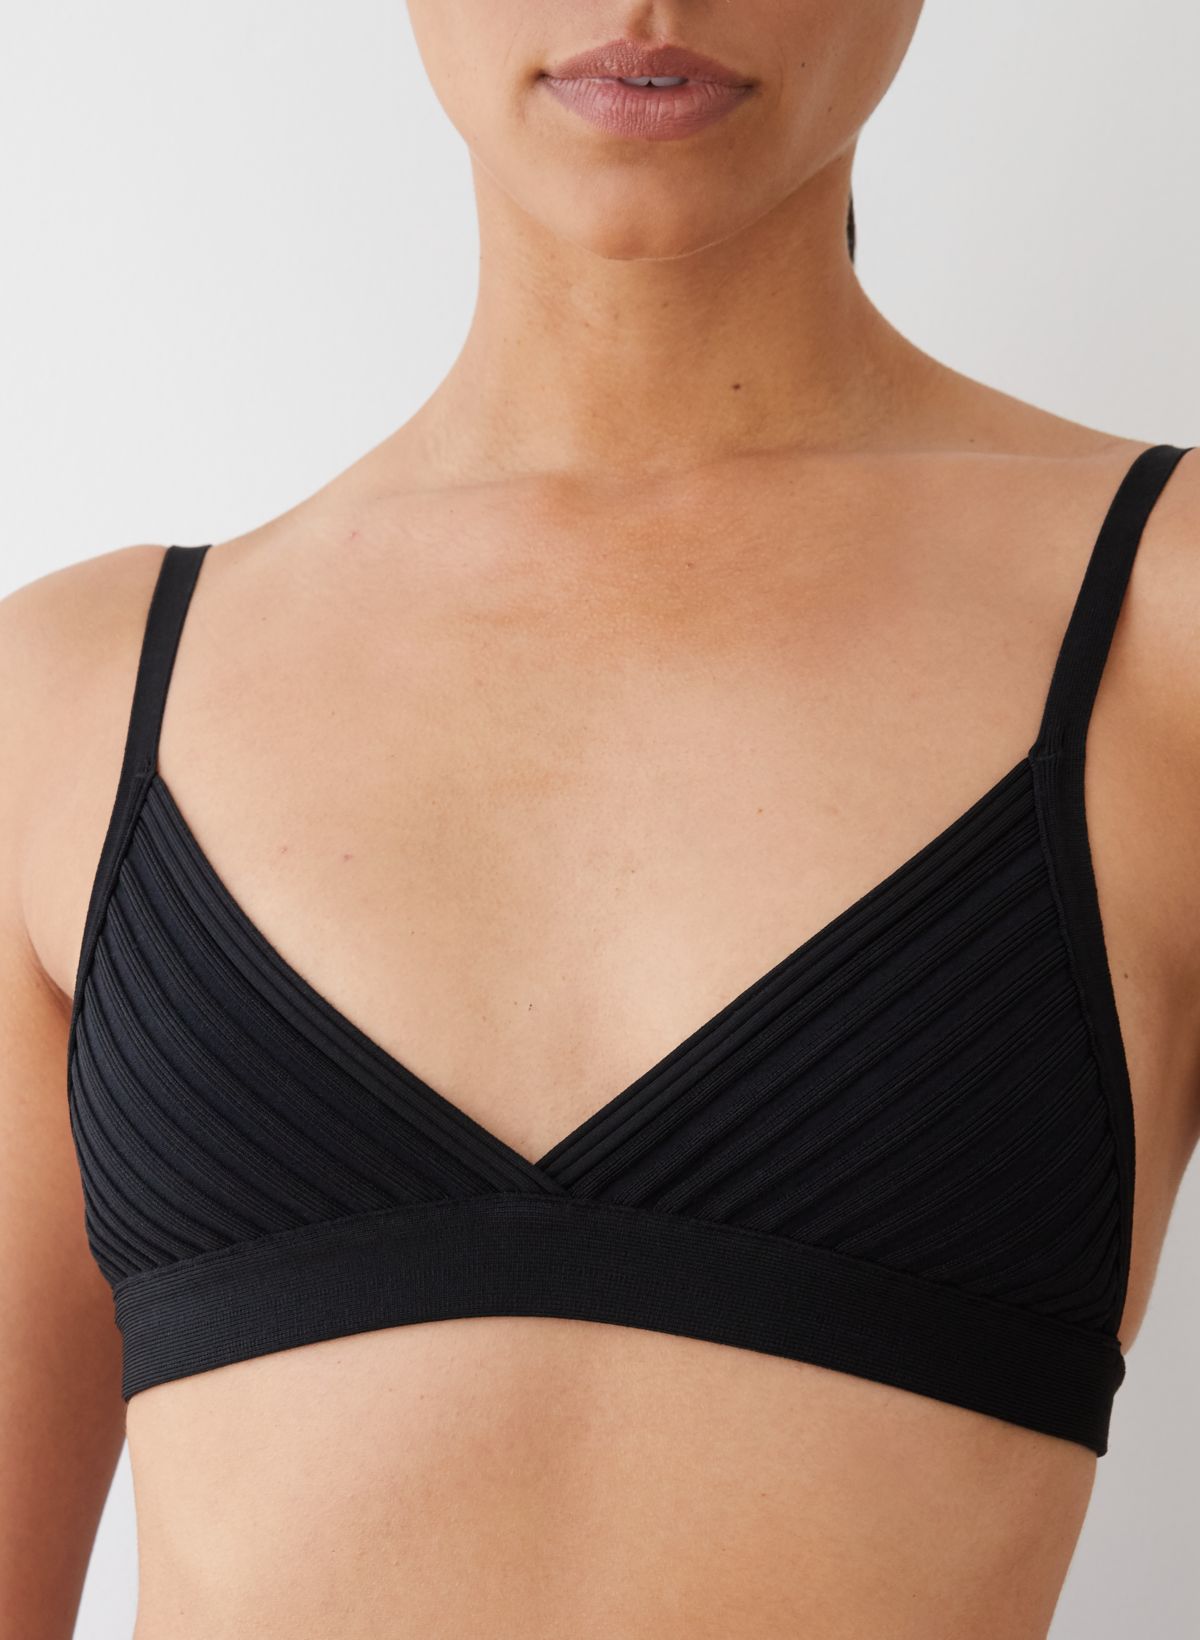 Silk bra top in black - Didu